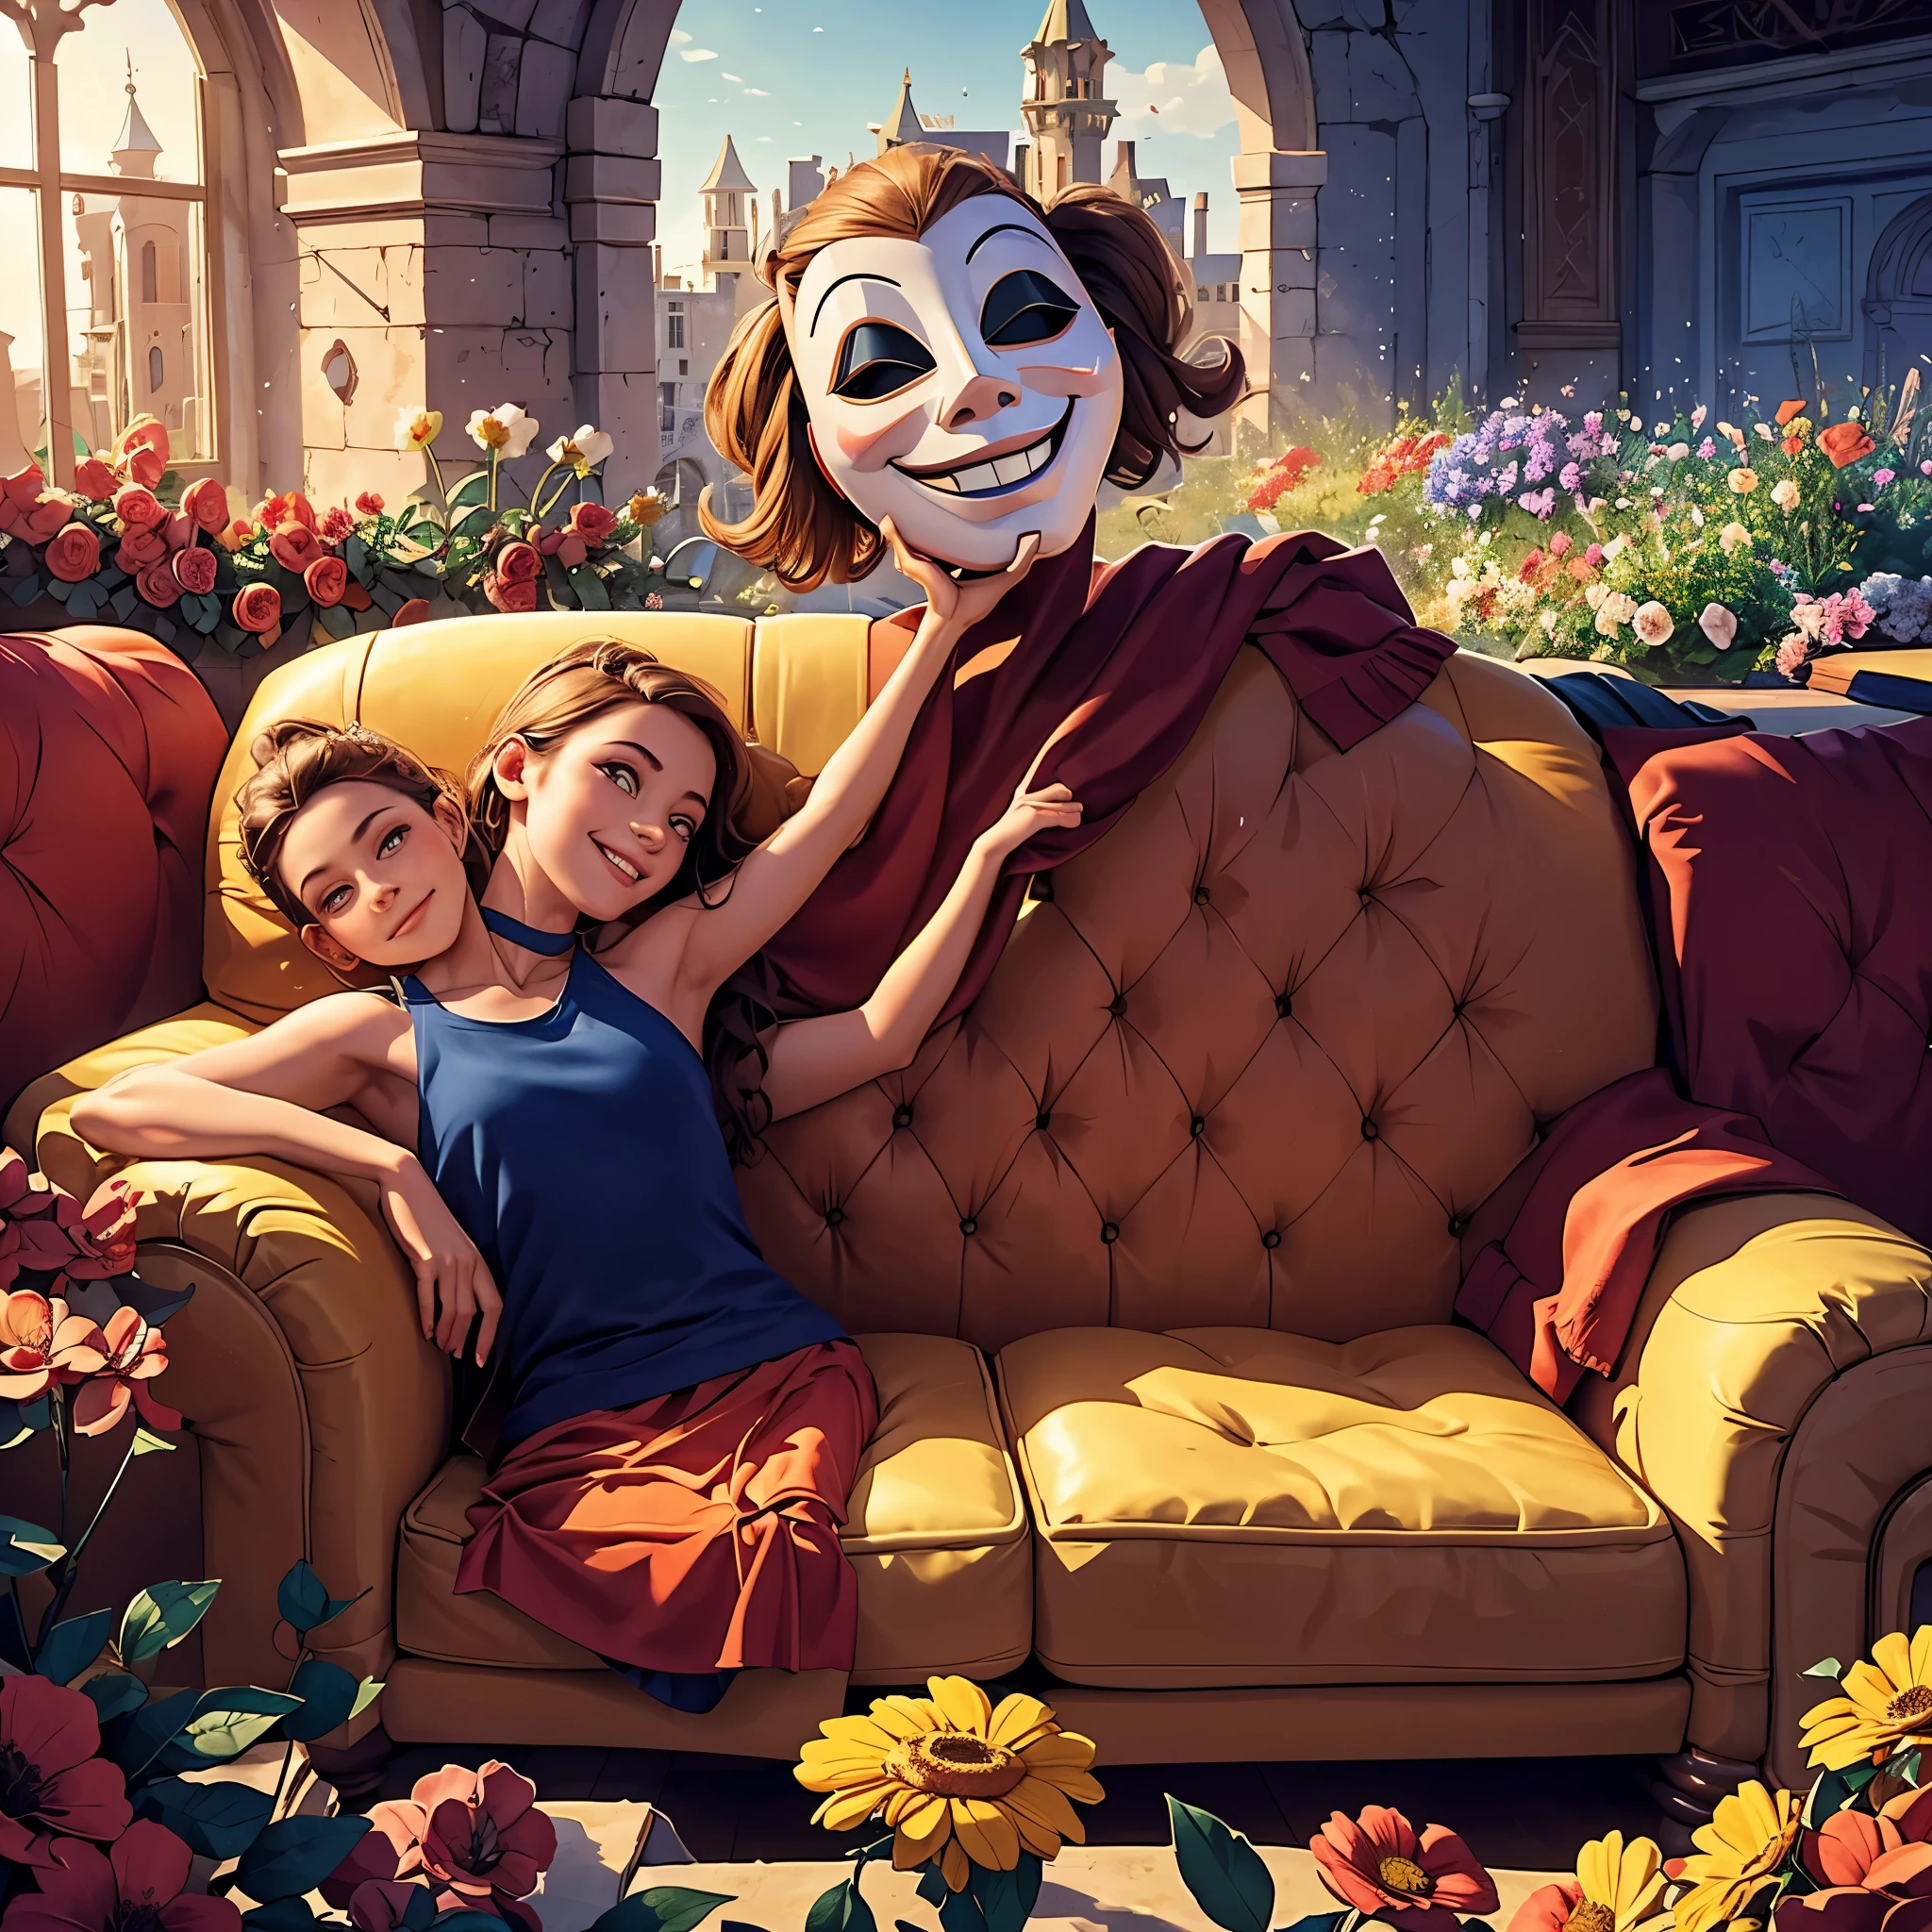 جسد يرتدي قناعًا مسرحيًا مبتسمًا مستلقيًا على أريكة في وسط قلعة مهجورة مغطاة بكثرة من الزهور